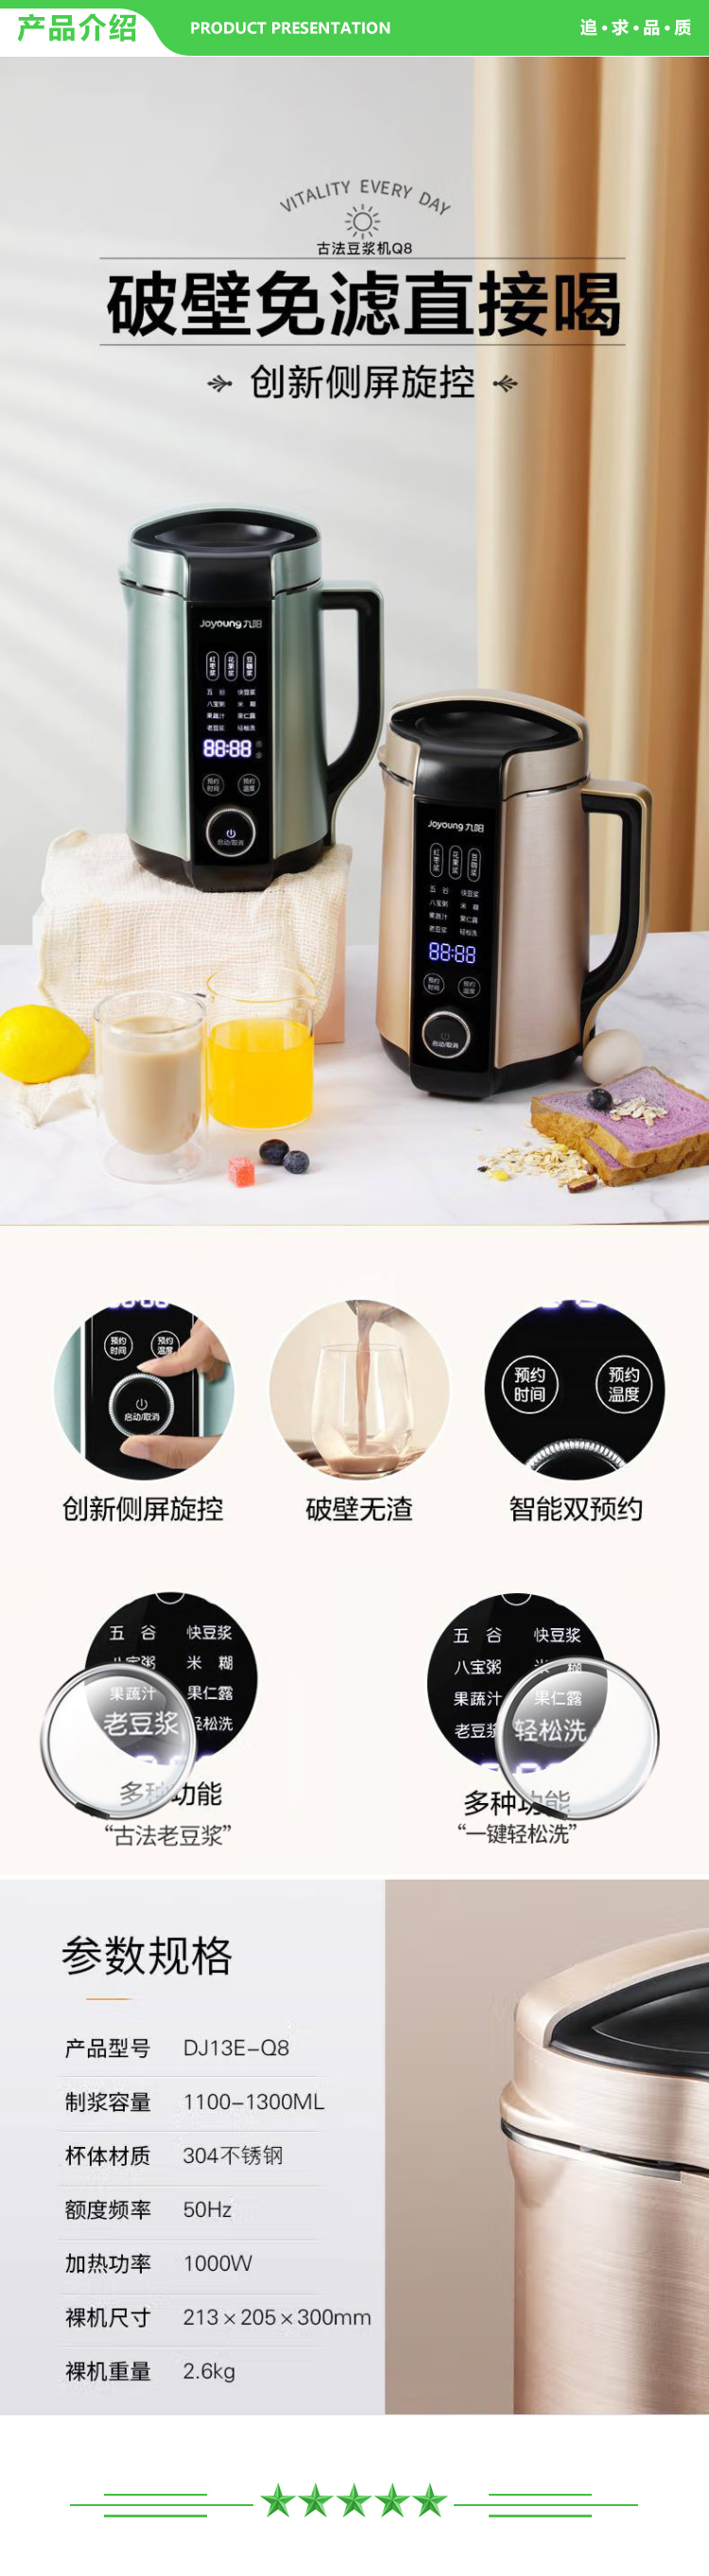 九阳 Joyoung DJ13E-Q8 豆浆机 1.3L破壁免滤2-5人食 多功能可预约榨汁机料理机破壁机 绿色.jpg